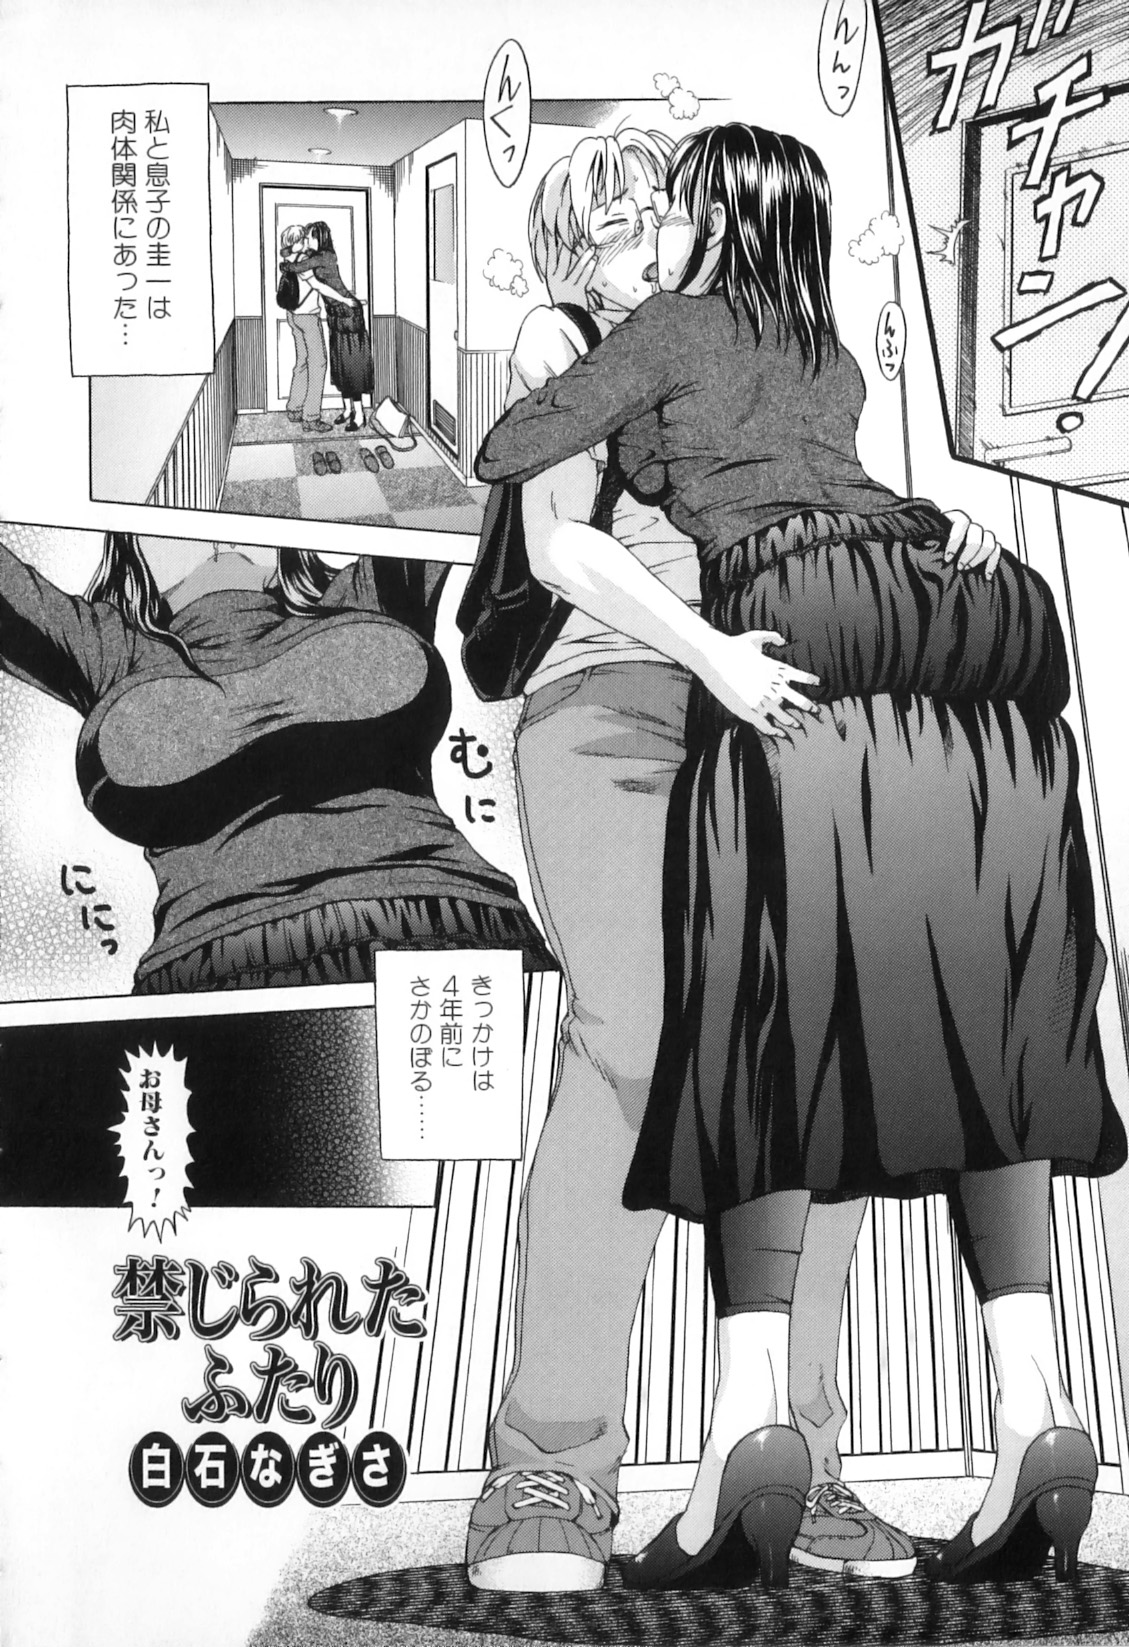 [Anthology] Boshi Chijou Kitan 2 page 24 full